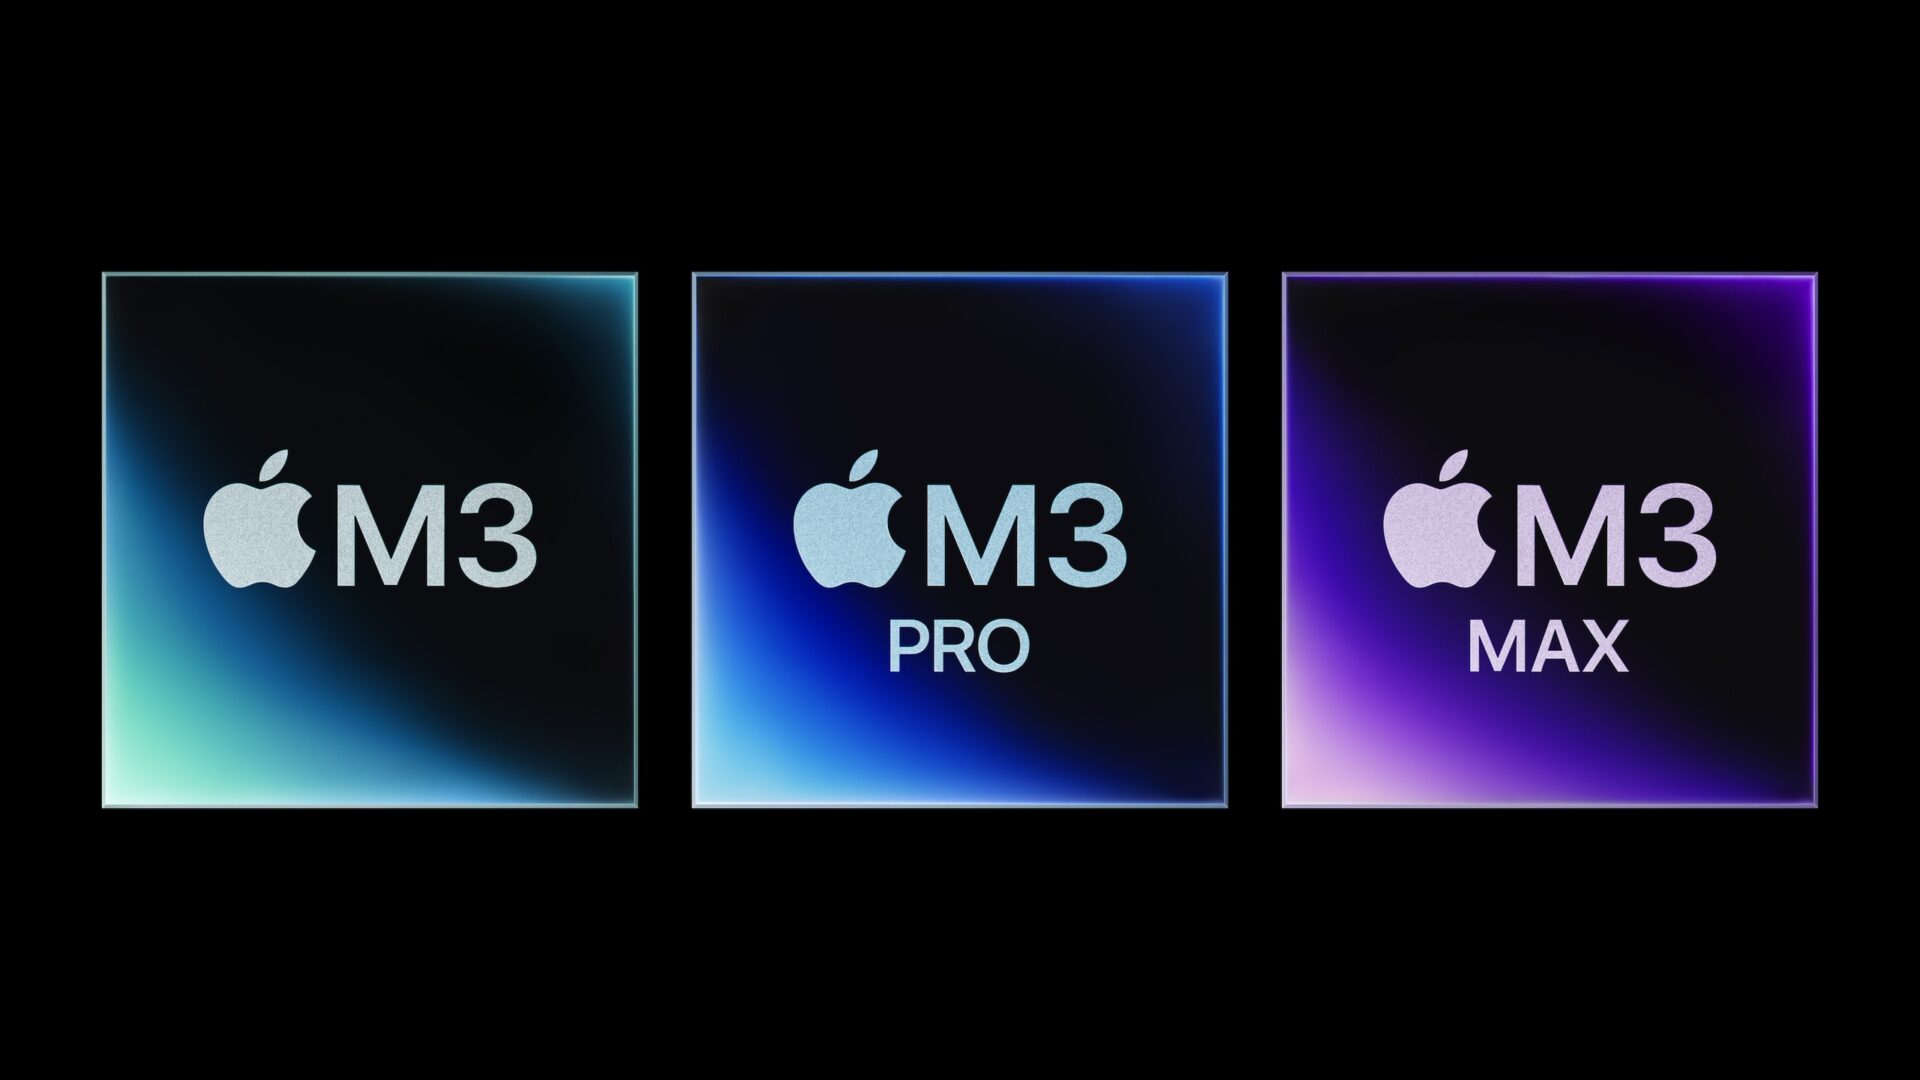 Apples nye M3-chipsæt fortsætter med at imponere